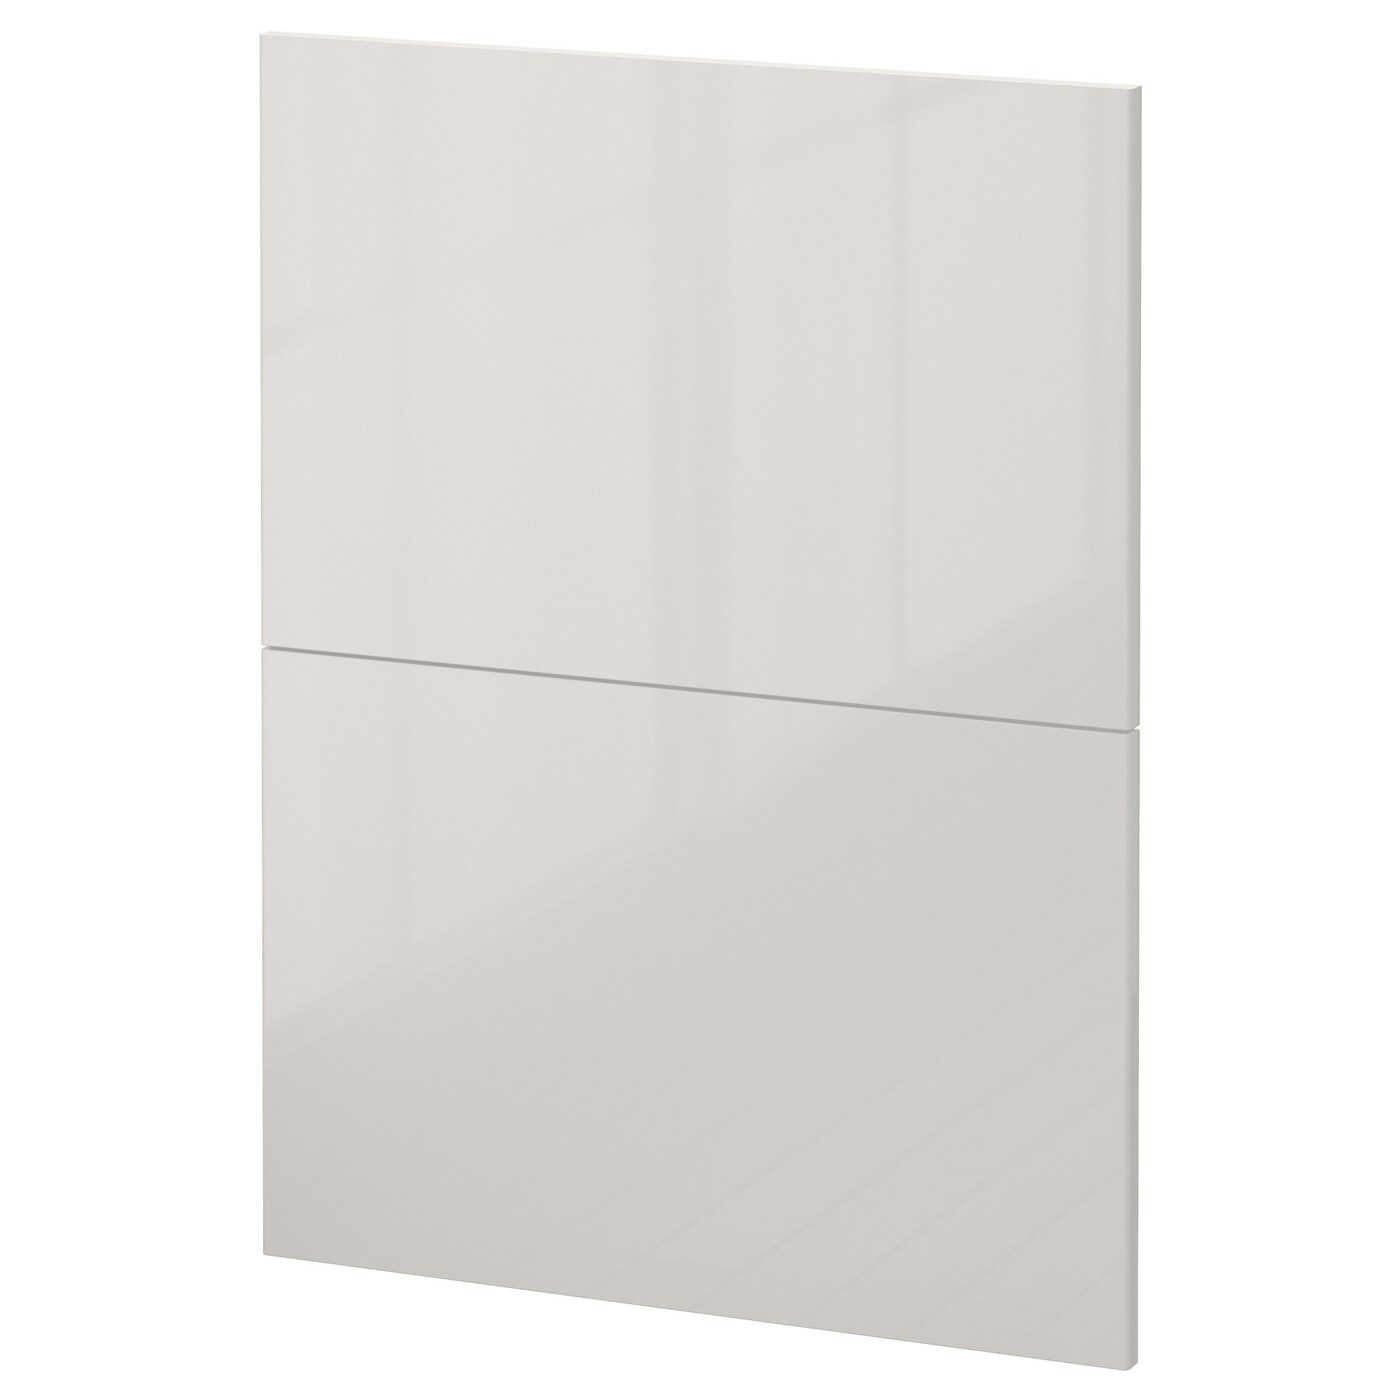 Накладная панель для посудомоечной машины - IKEA METOD, 80х60 см, светло-серый, МЕТОД ИКЕА